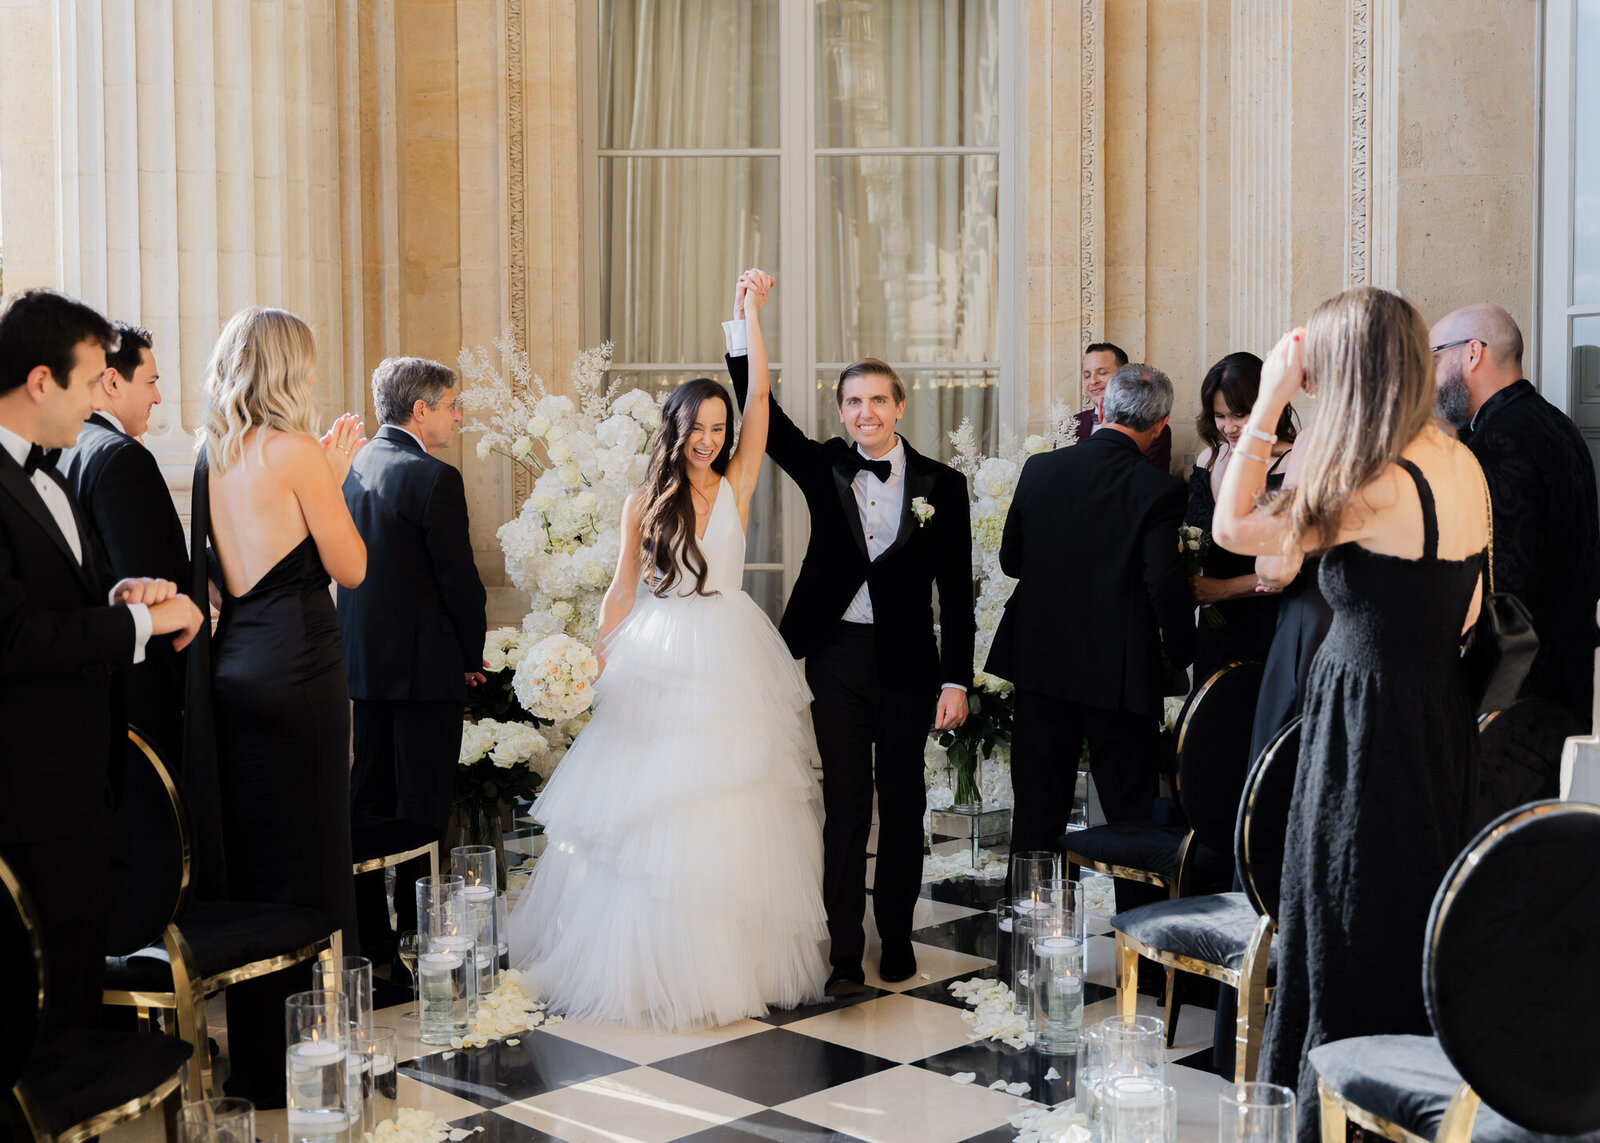 Hotel de crillon paris wedding photography